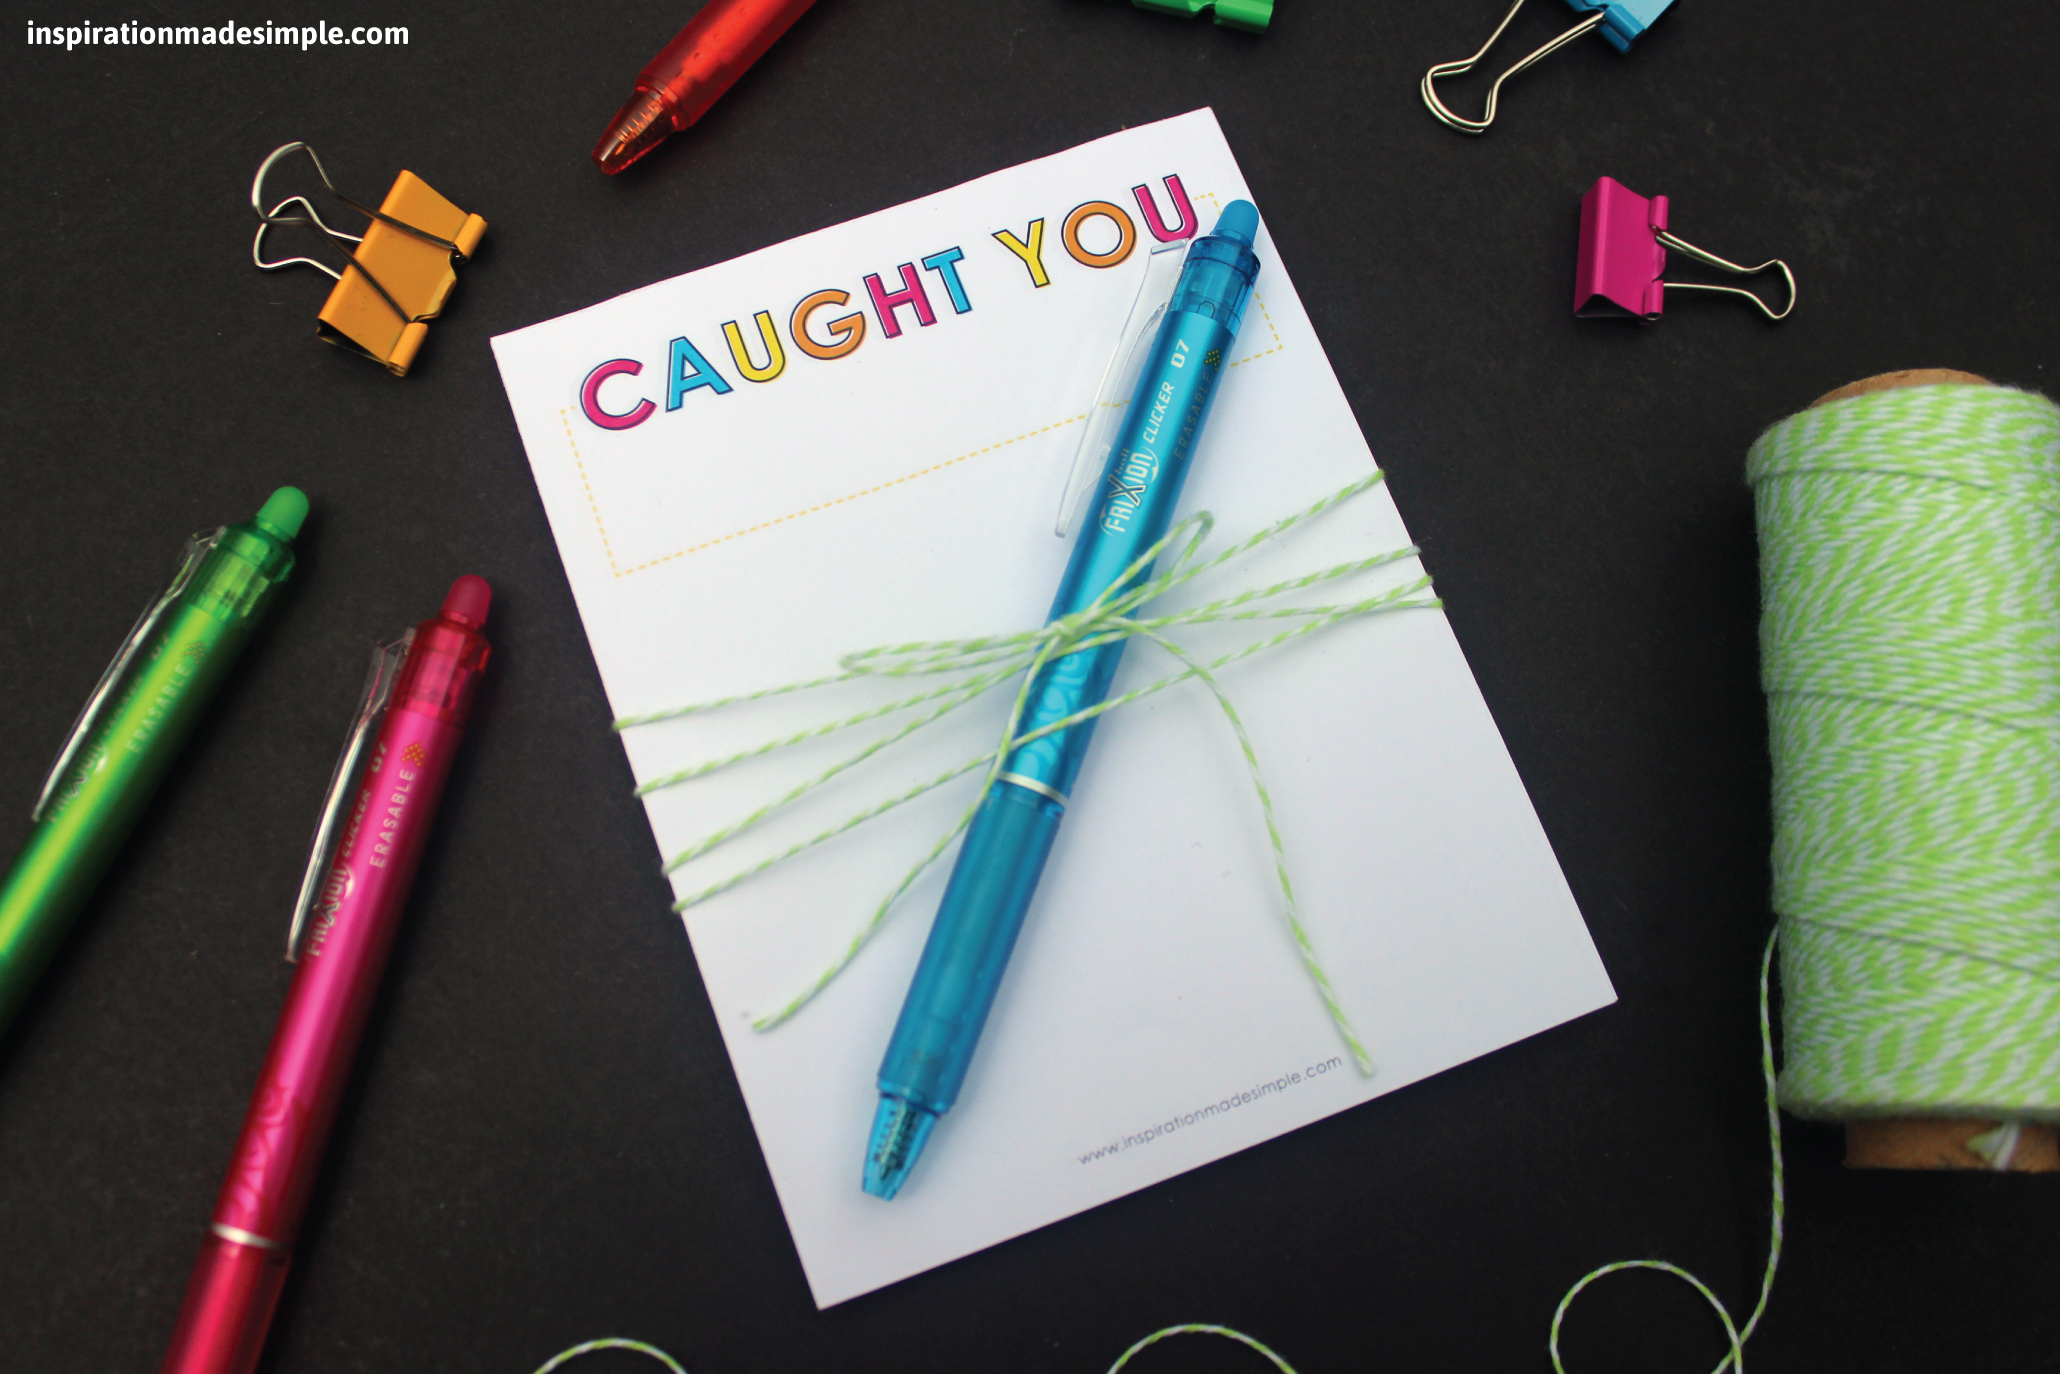 DIY "Caught You" Notepad for Teachers #PilotPen4School #PowerToThePen